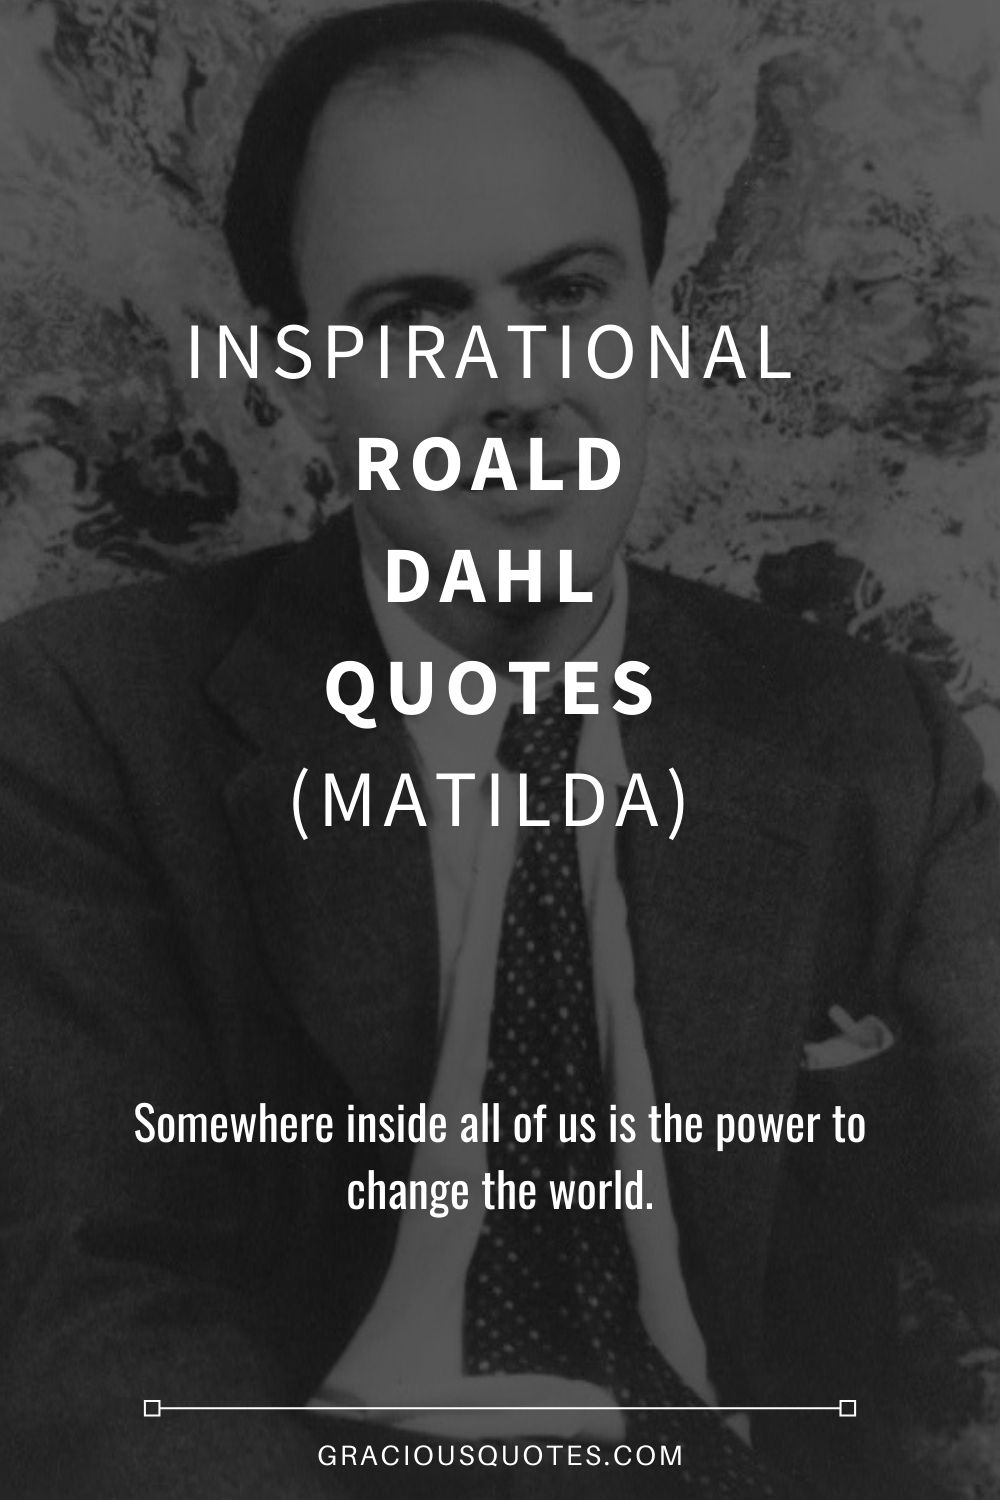 42 Inspirational Roald Dahl Quotes (MATILDA)